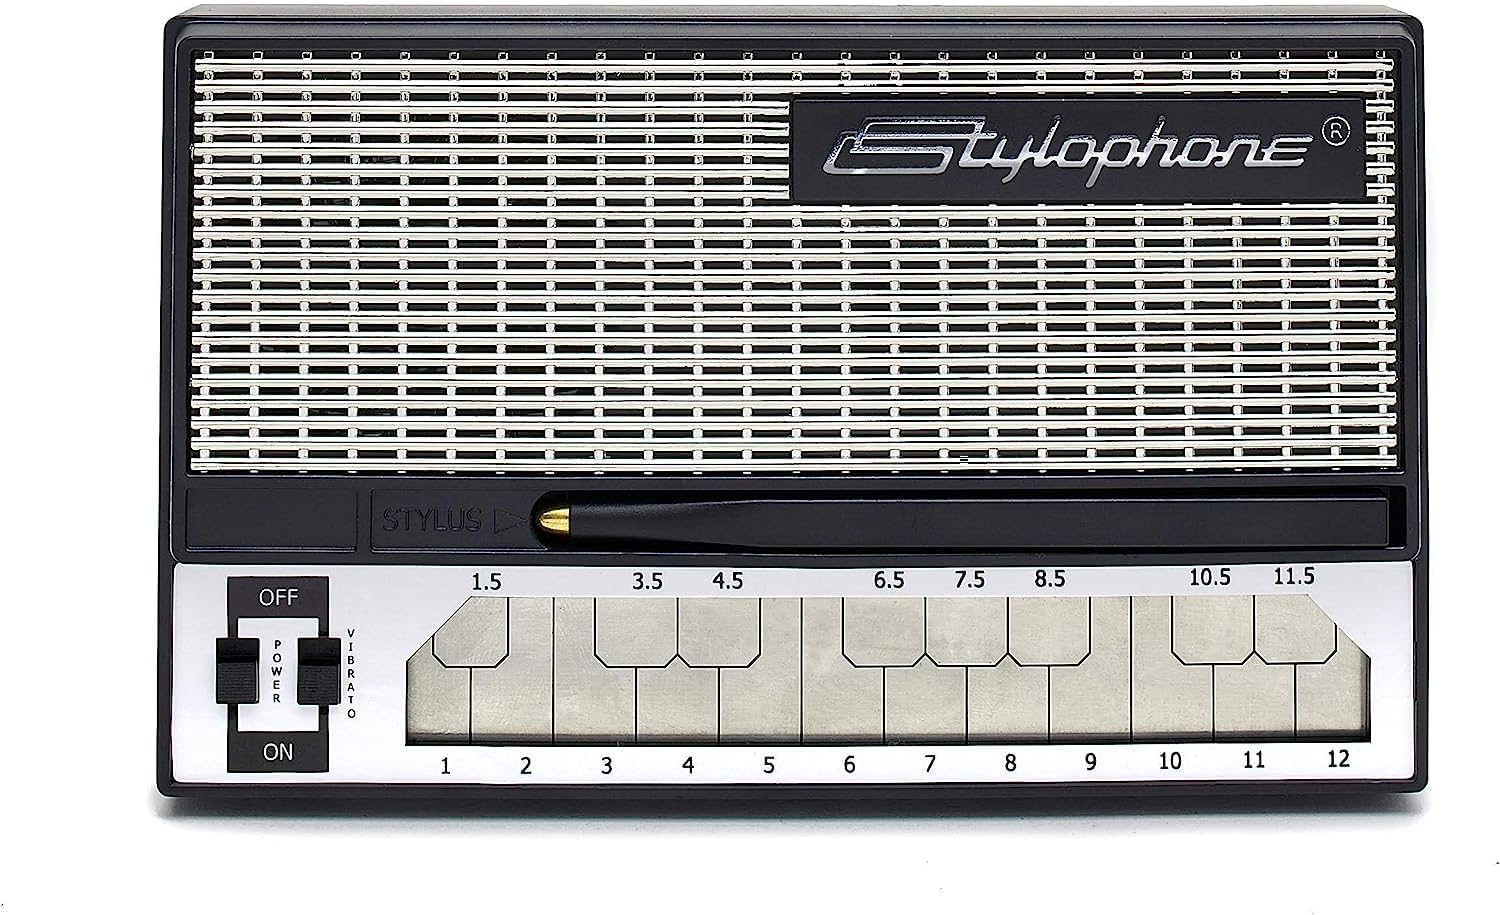 Stylophone The Original Pocket Electronic Synthesizer